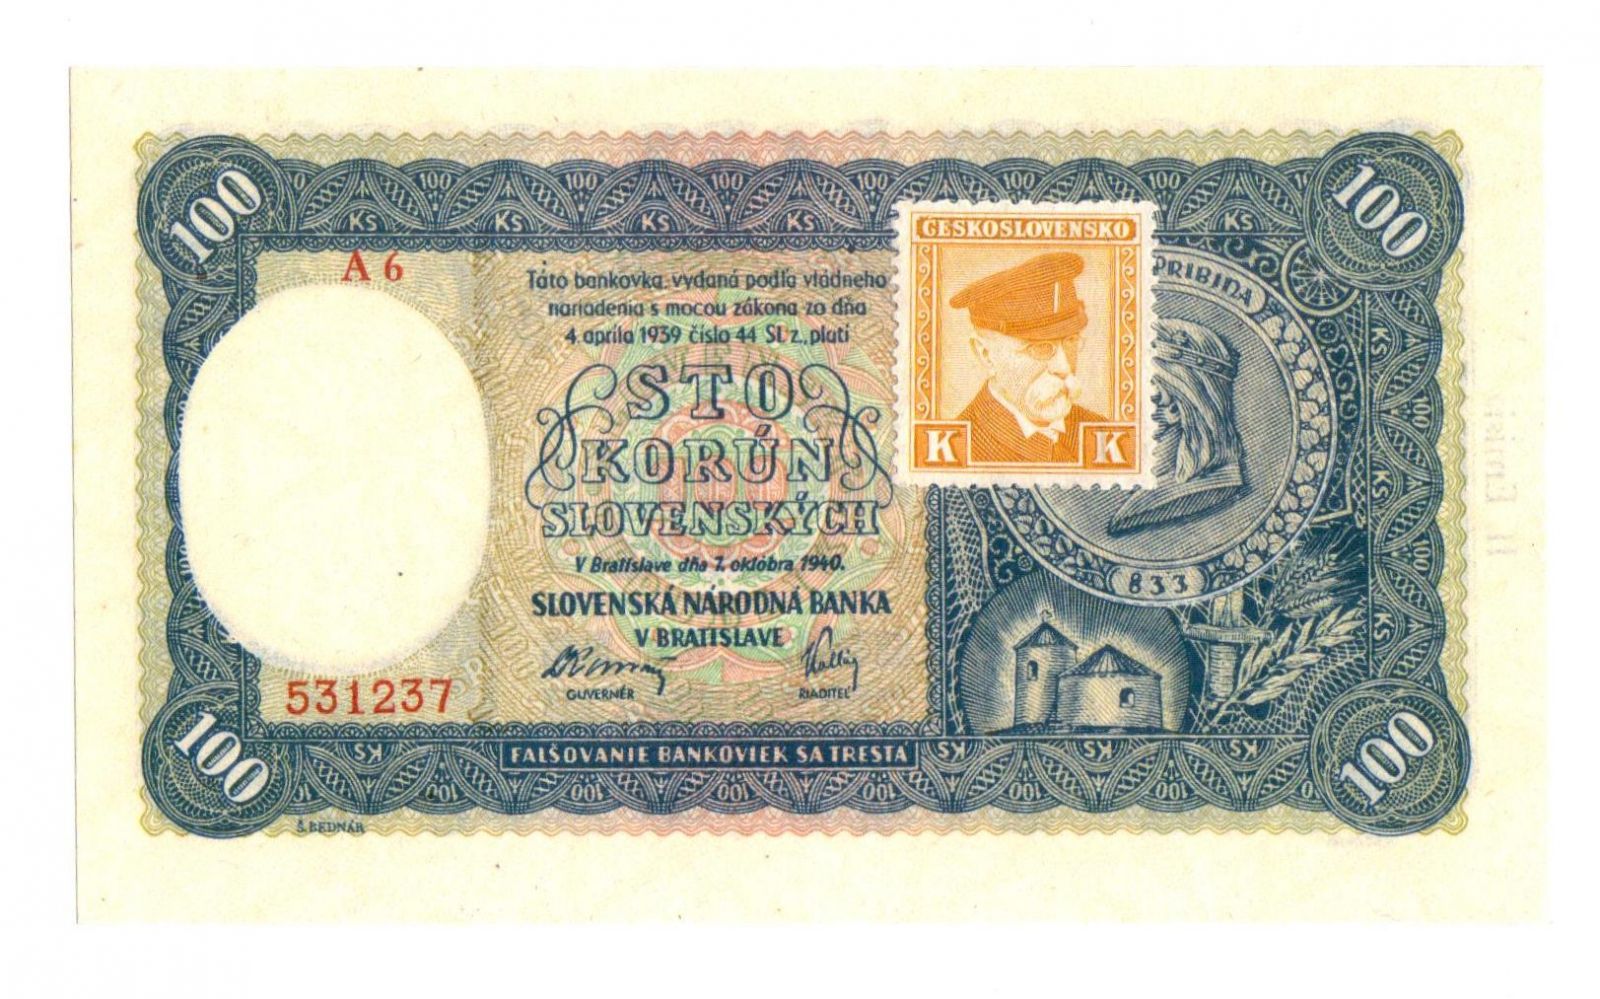 100Ks/1940-kolek ČSR/, stav UNC, série A 6 - II. vydání